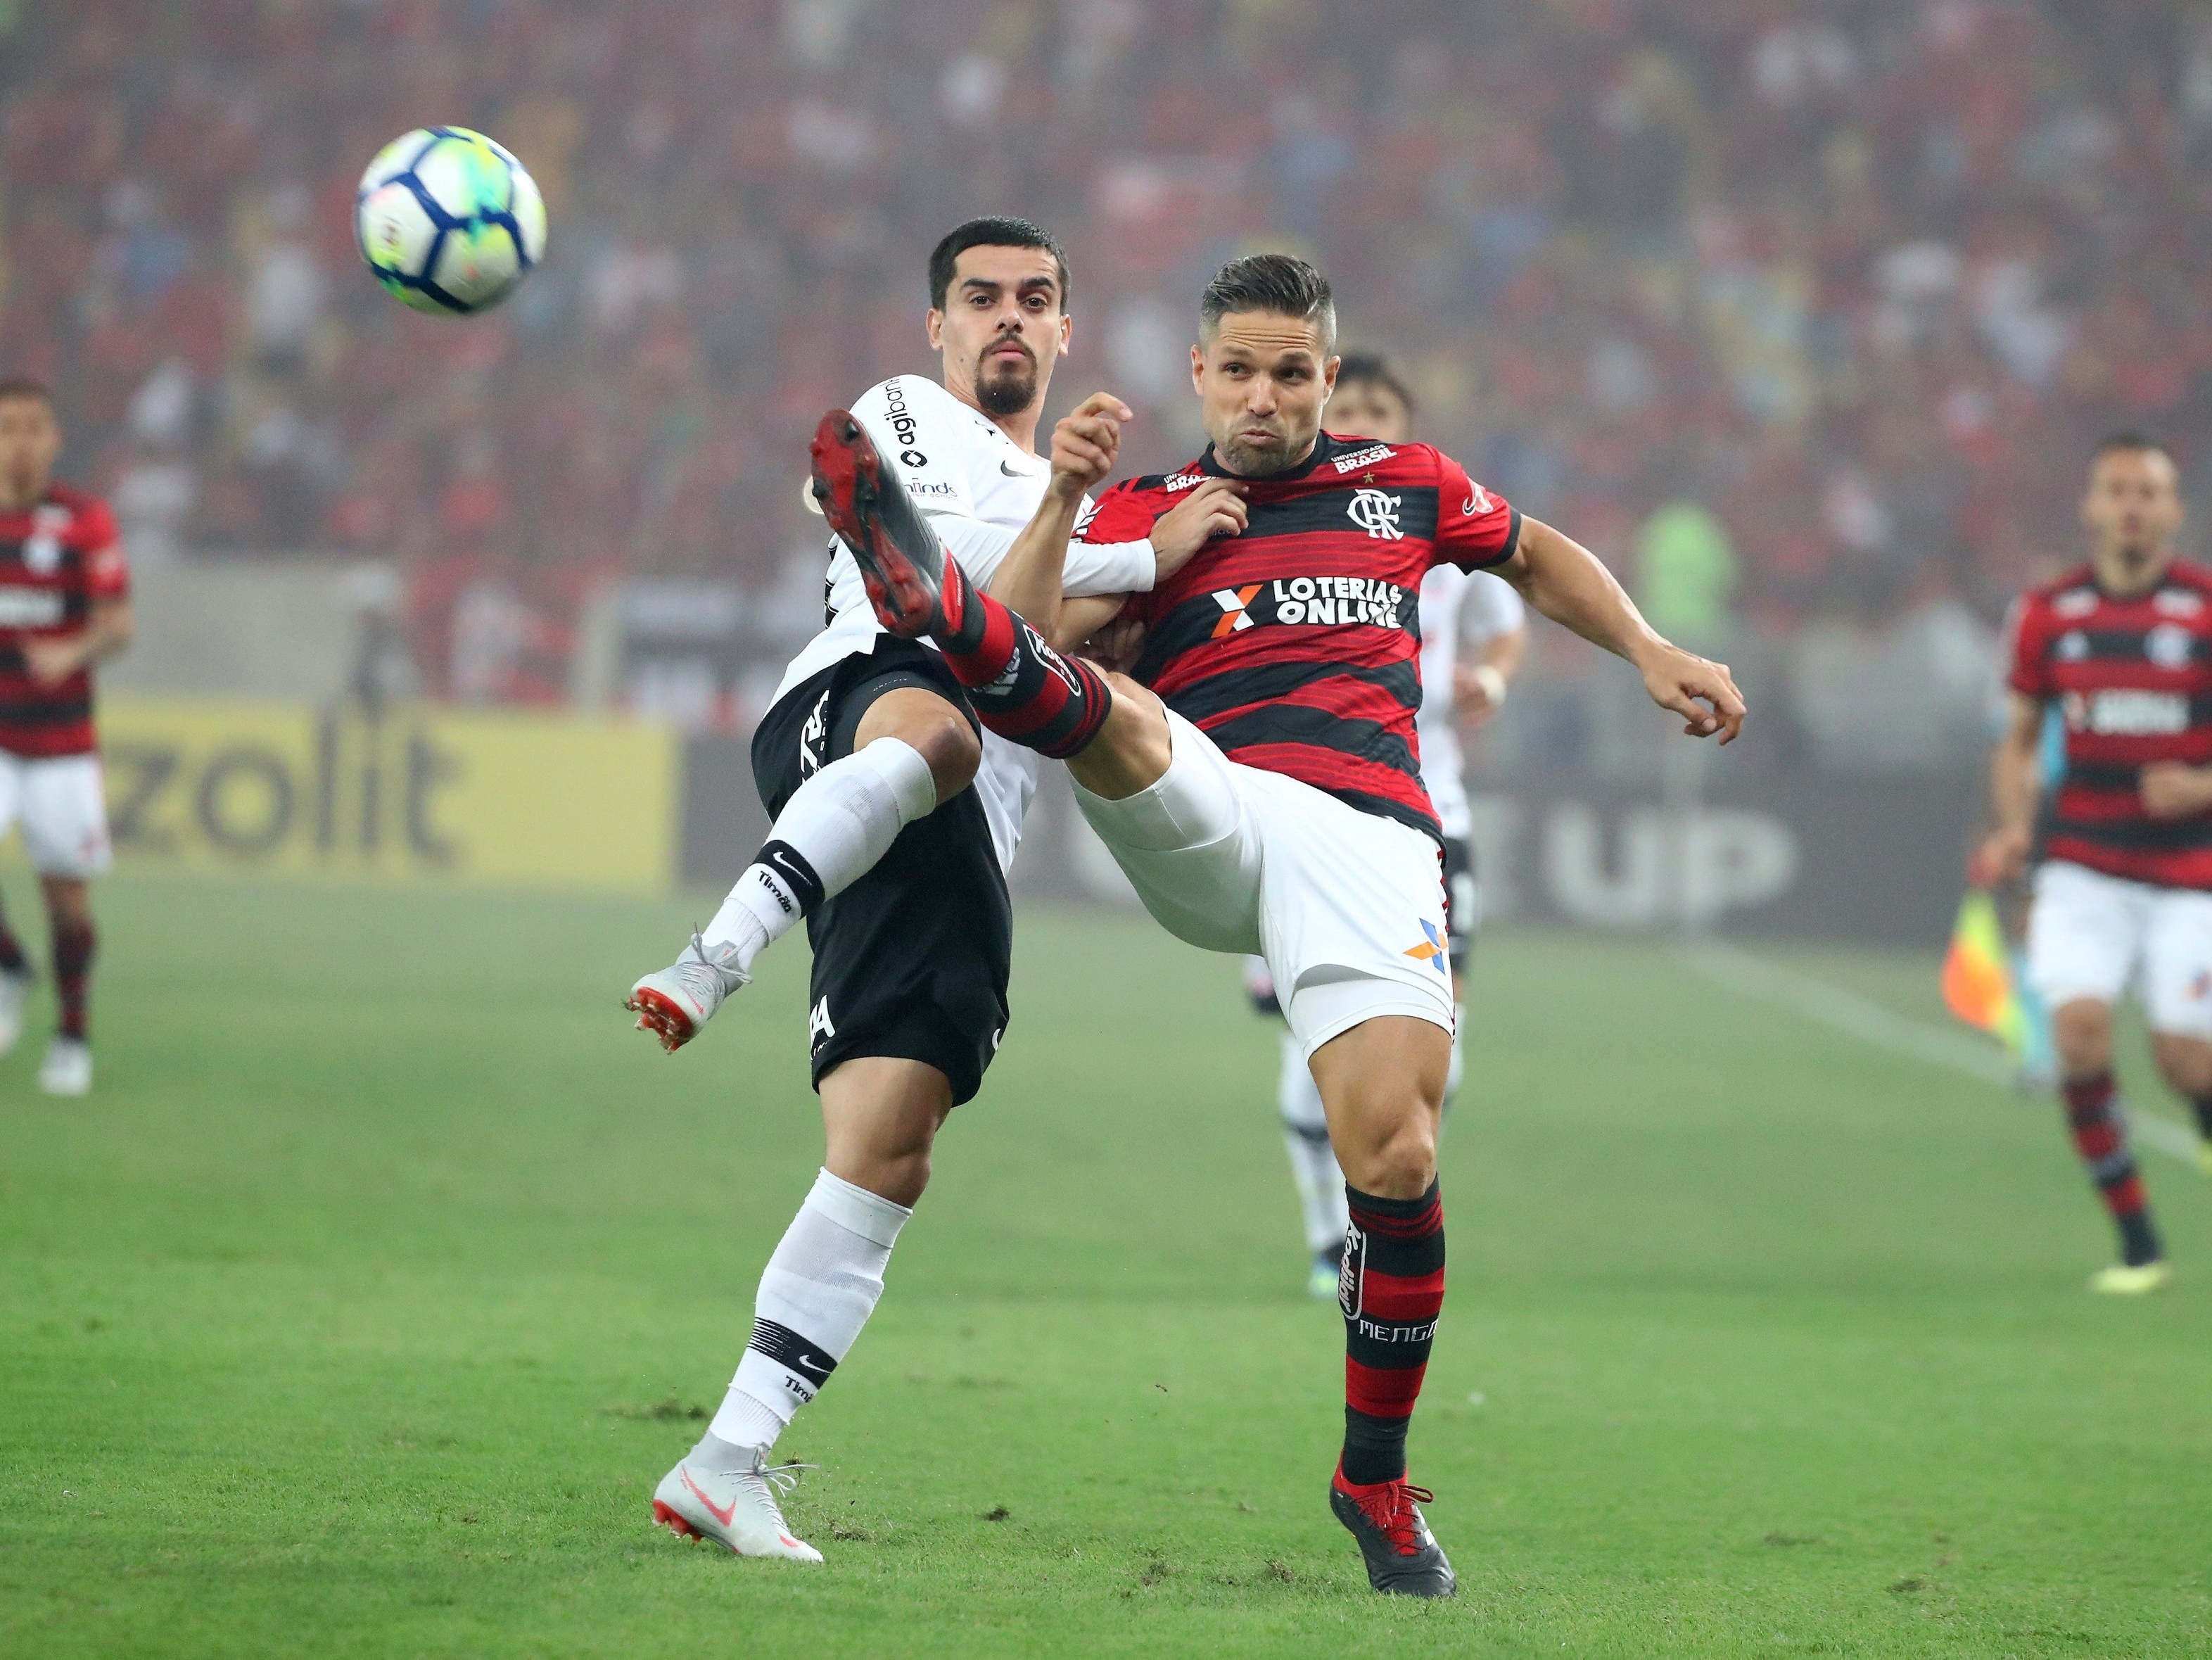 SportsCenter Brasil on X: DEU O PAPO! Andrés Sanchez afirmou que o  Flamengo não é o melhor time do país e que o Corinthians de 2015 foi a  melhor equipe brasileira do